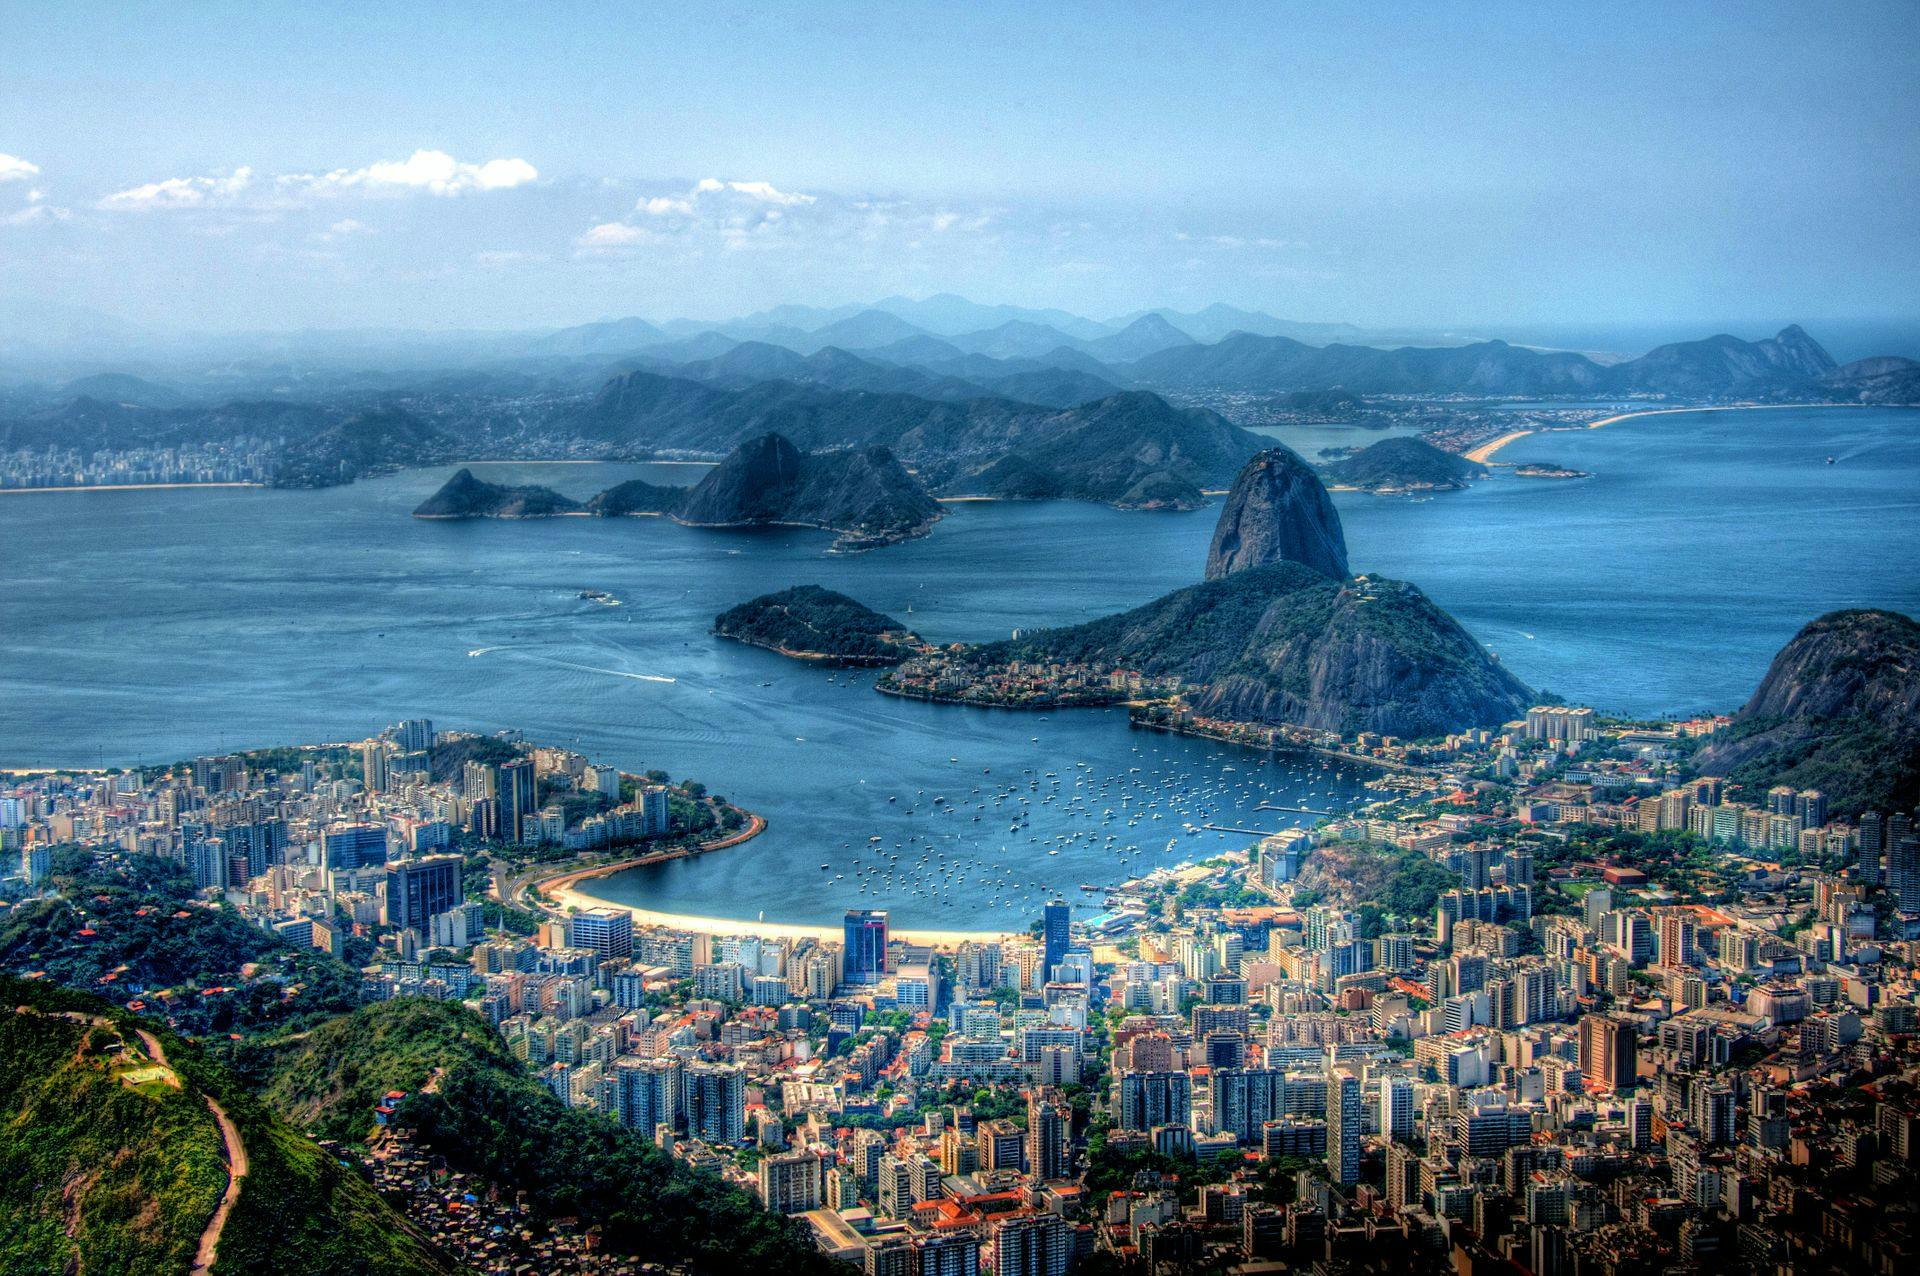 Rio de Janeiro (Brazil) - Card Background Image